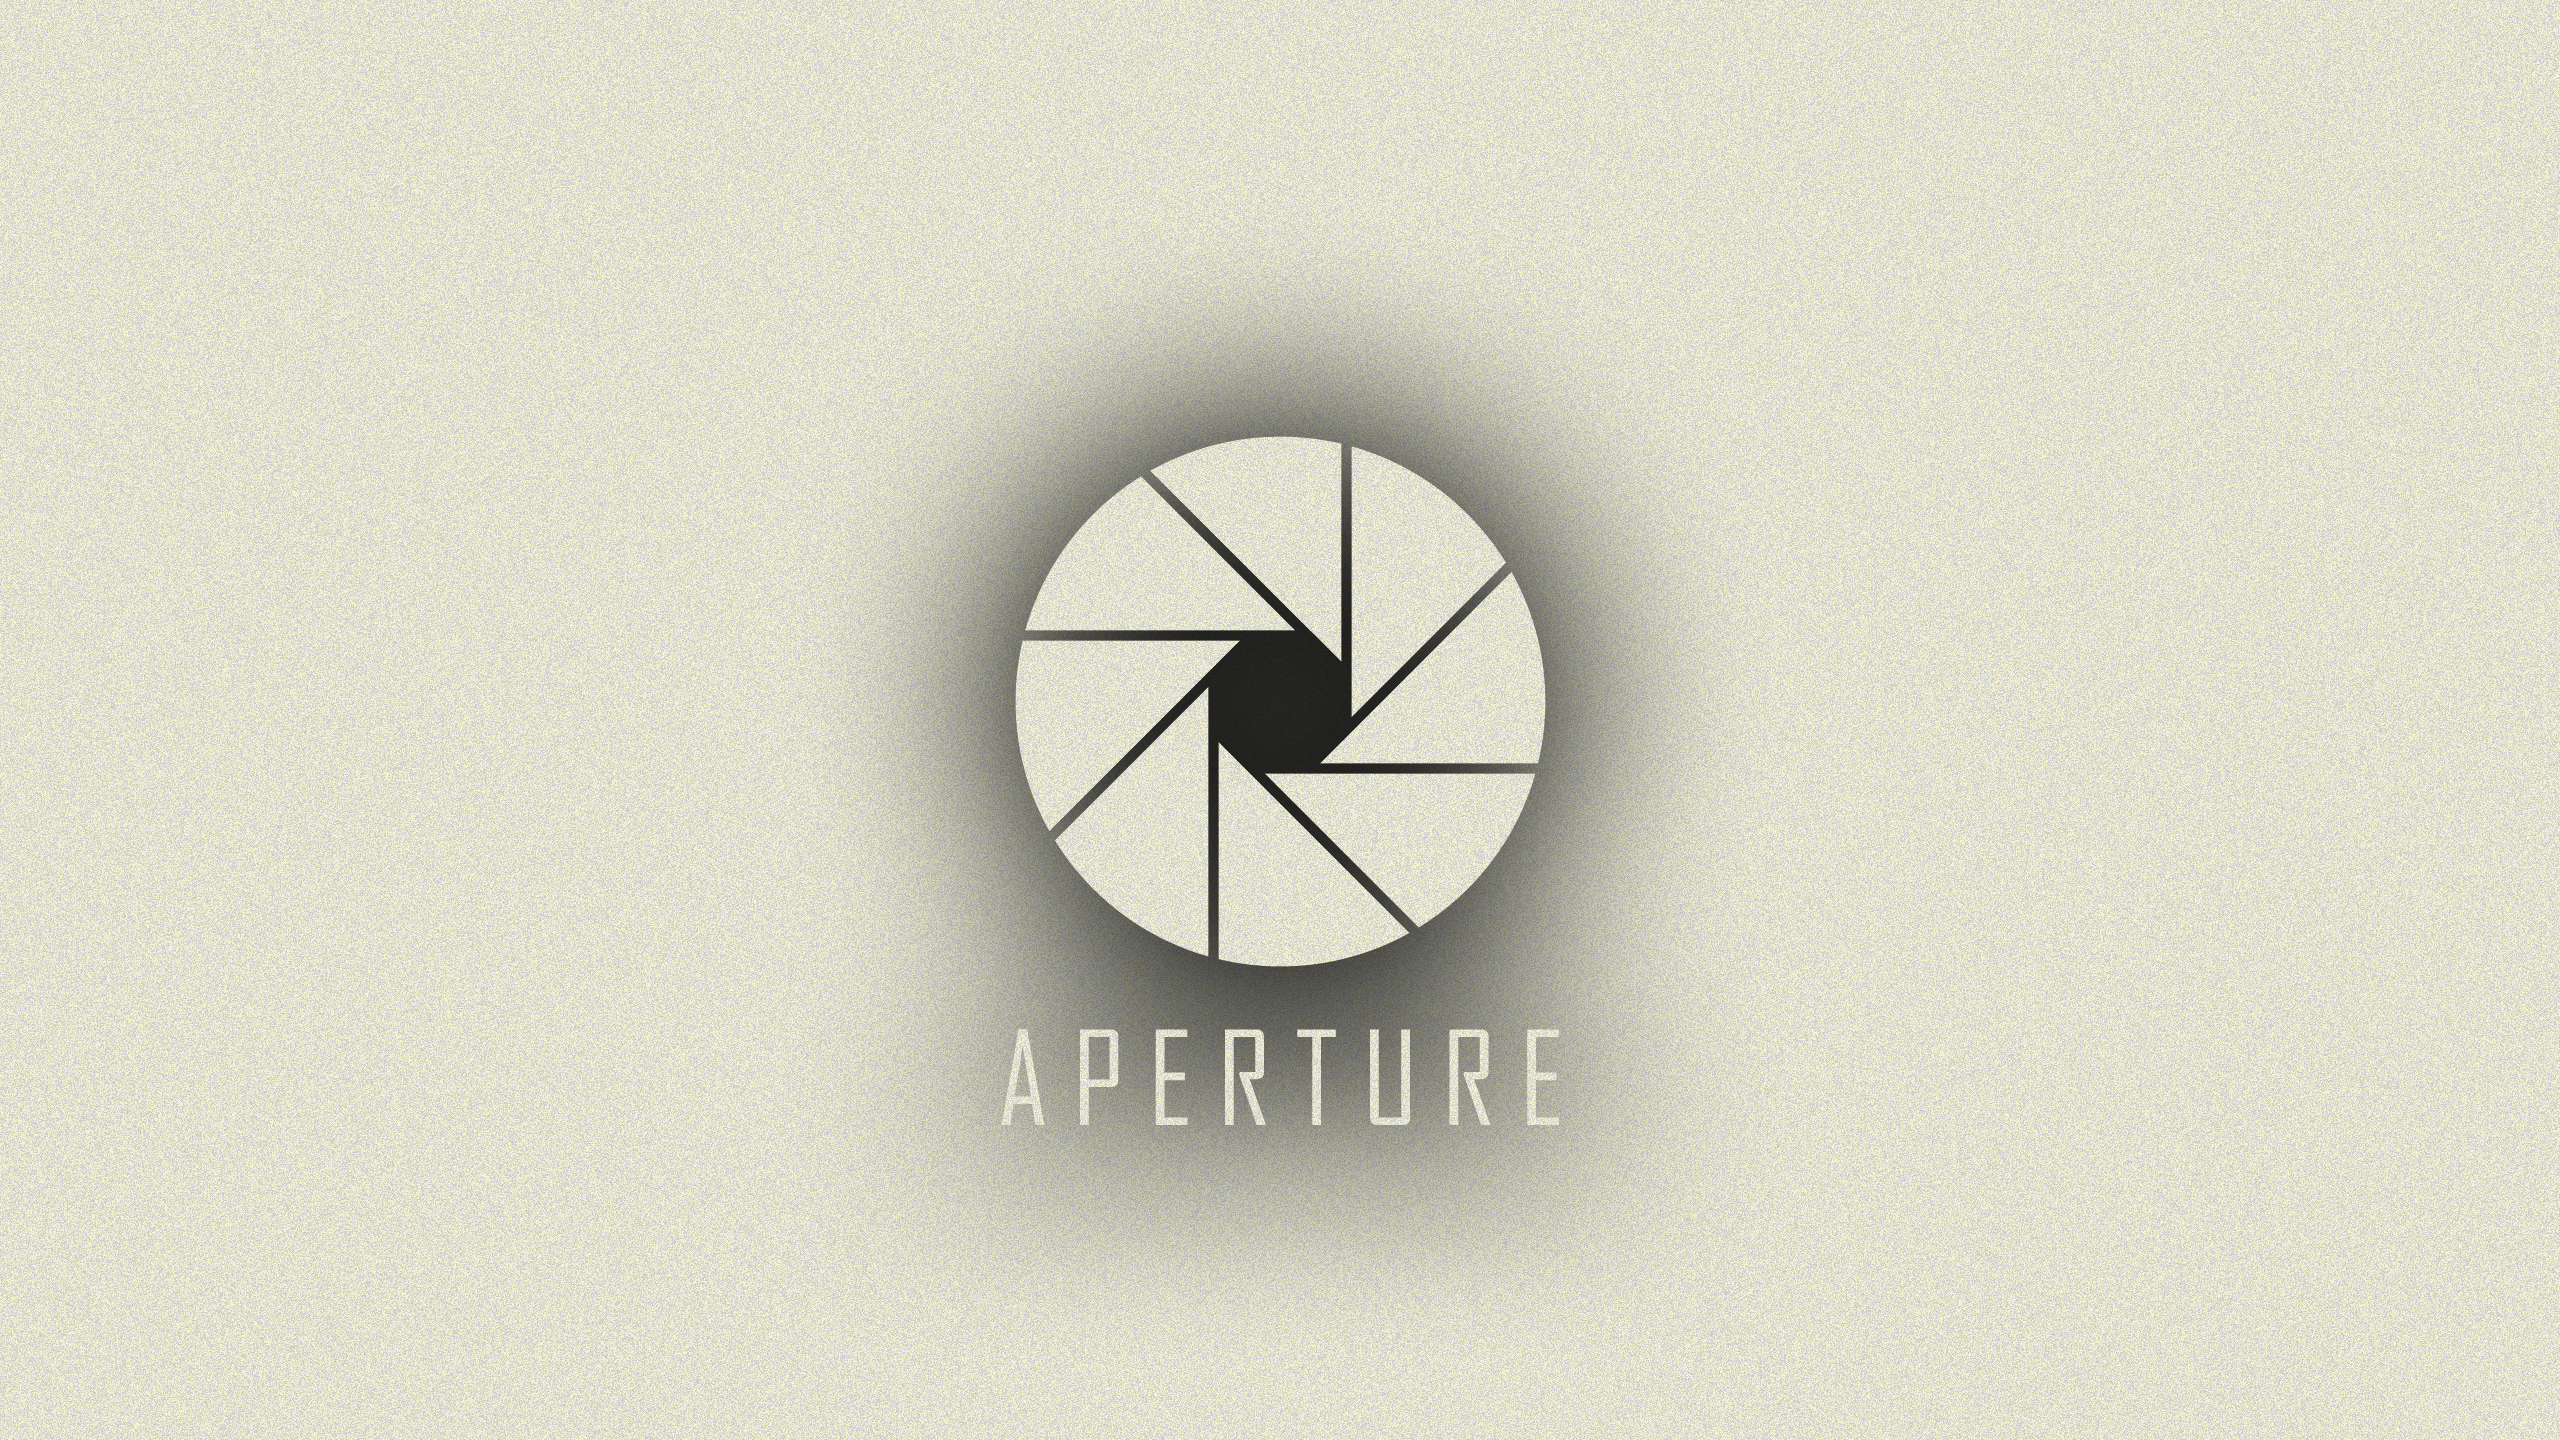 aperture, Portal Wallpaper